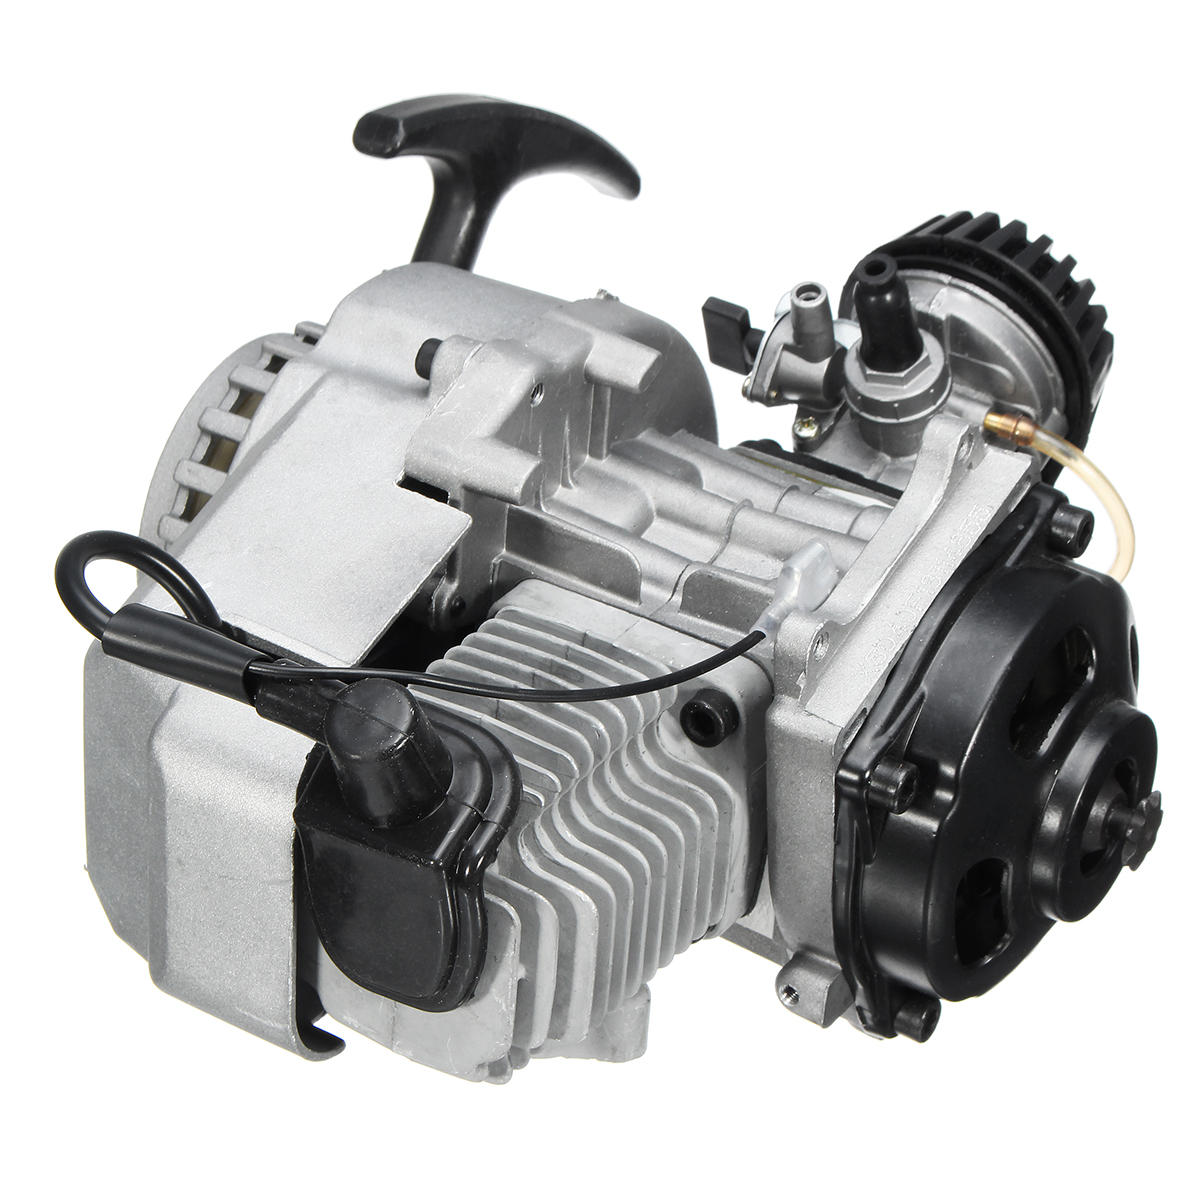 Image of 49cc 2-Stroke Pull Start Engine Motor For Pocket Mini Dirt Bike ATV Scooter